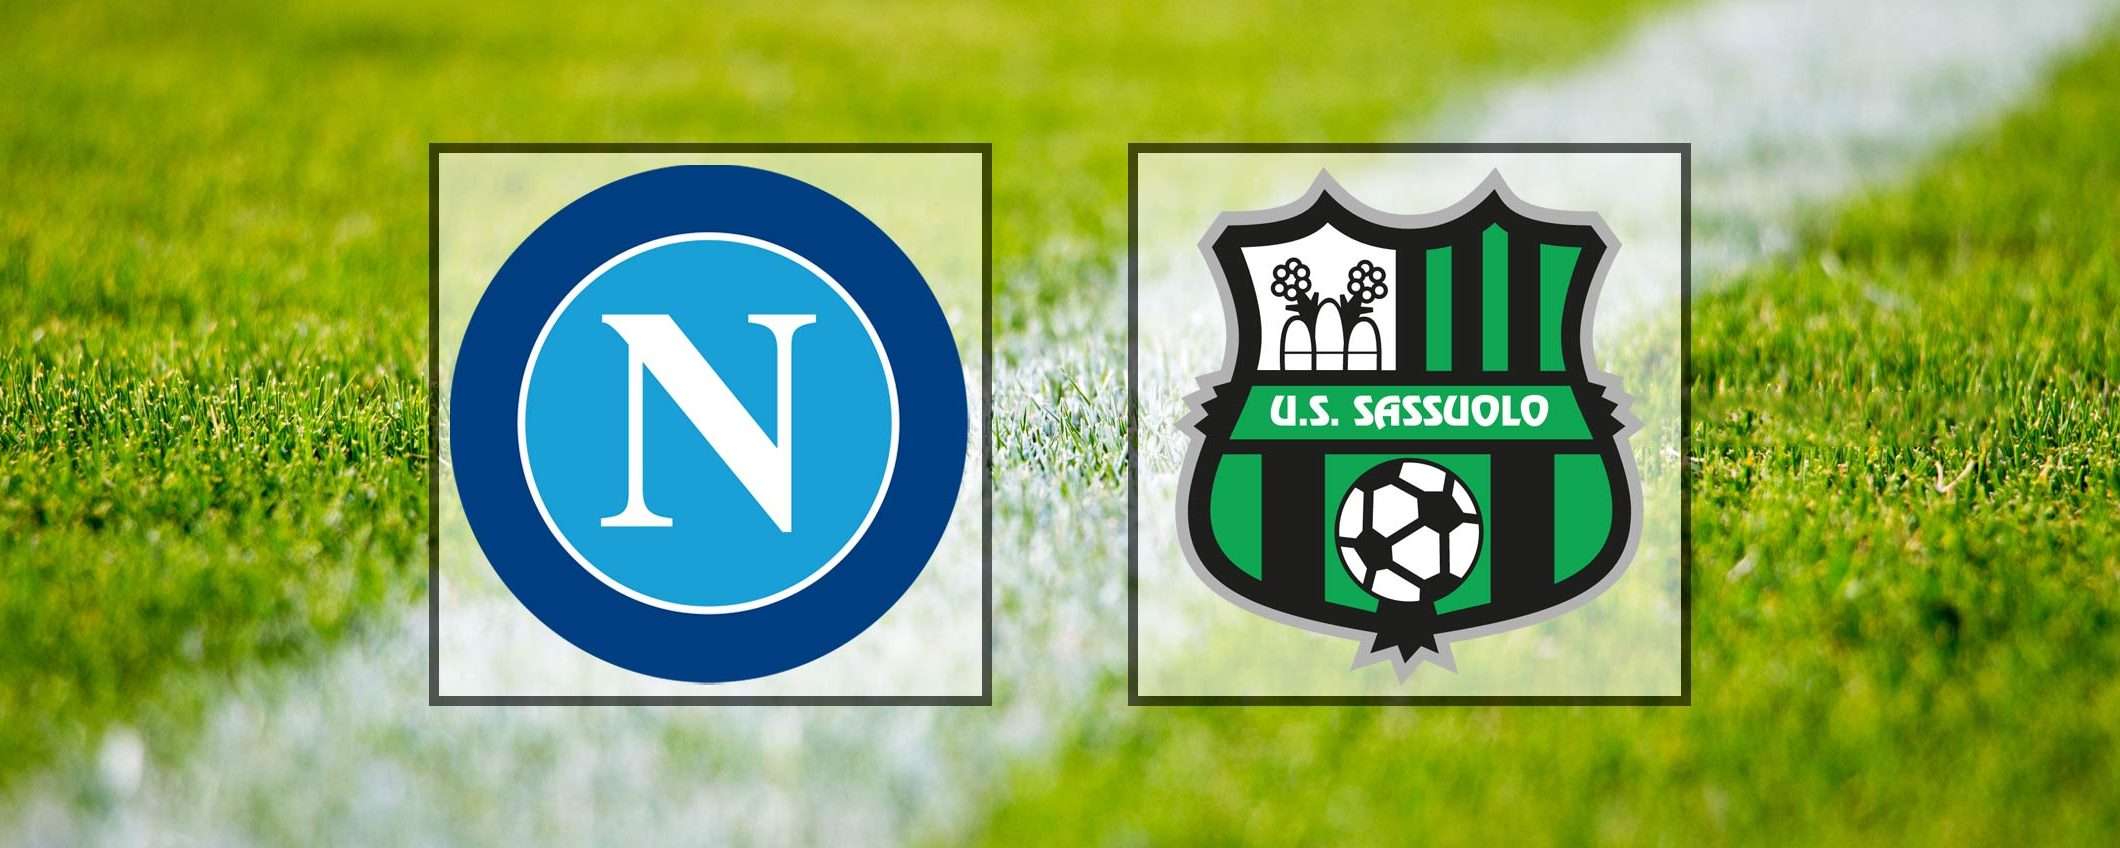 Come vedere Napoli-Sassuolo in streaming (Serie A)